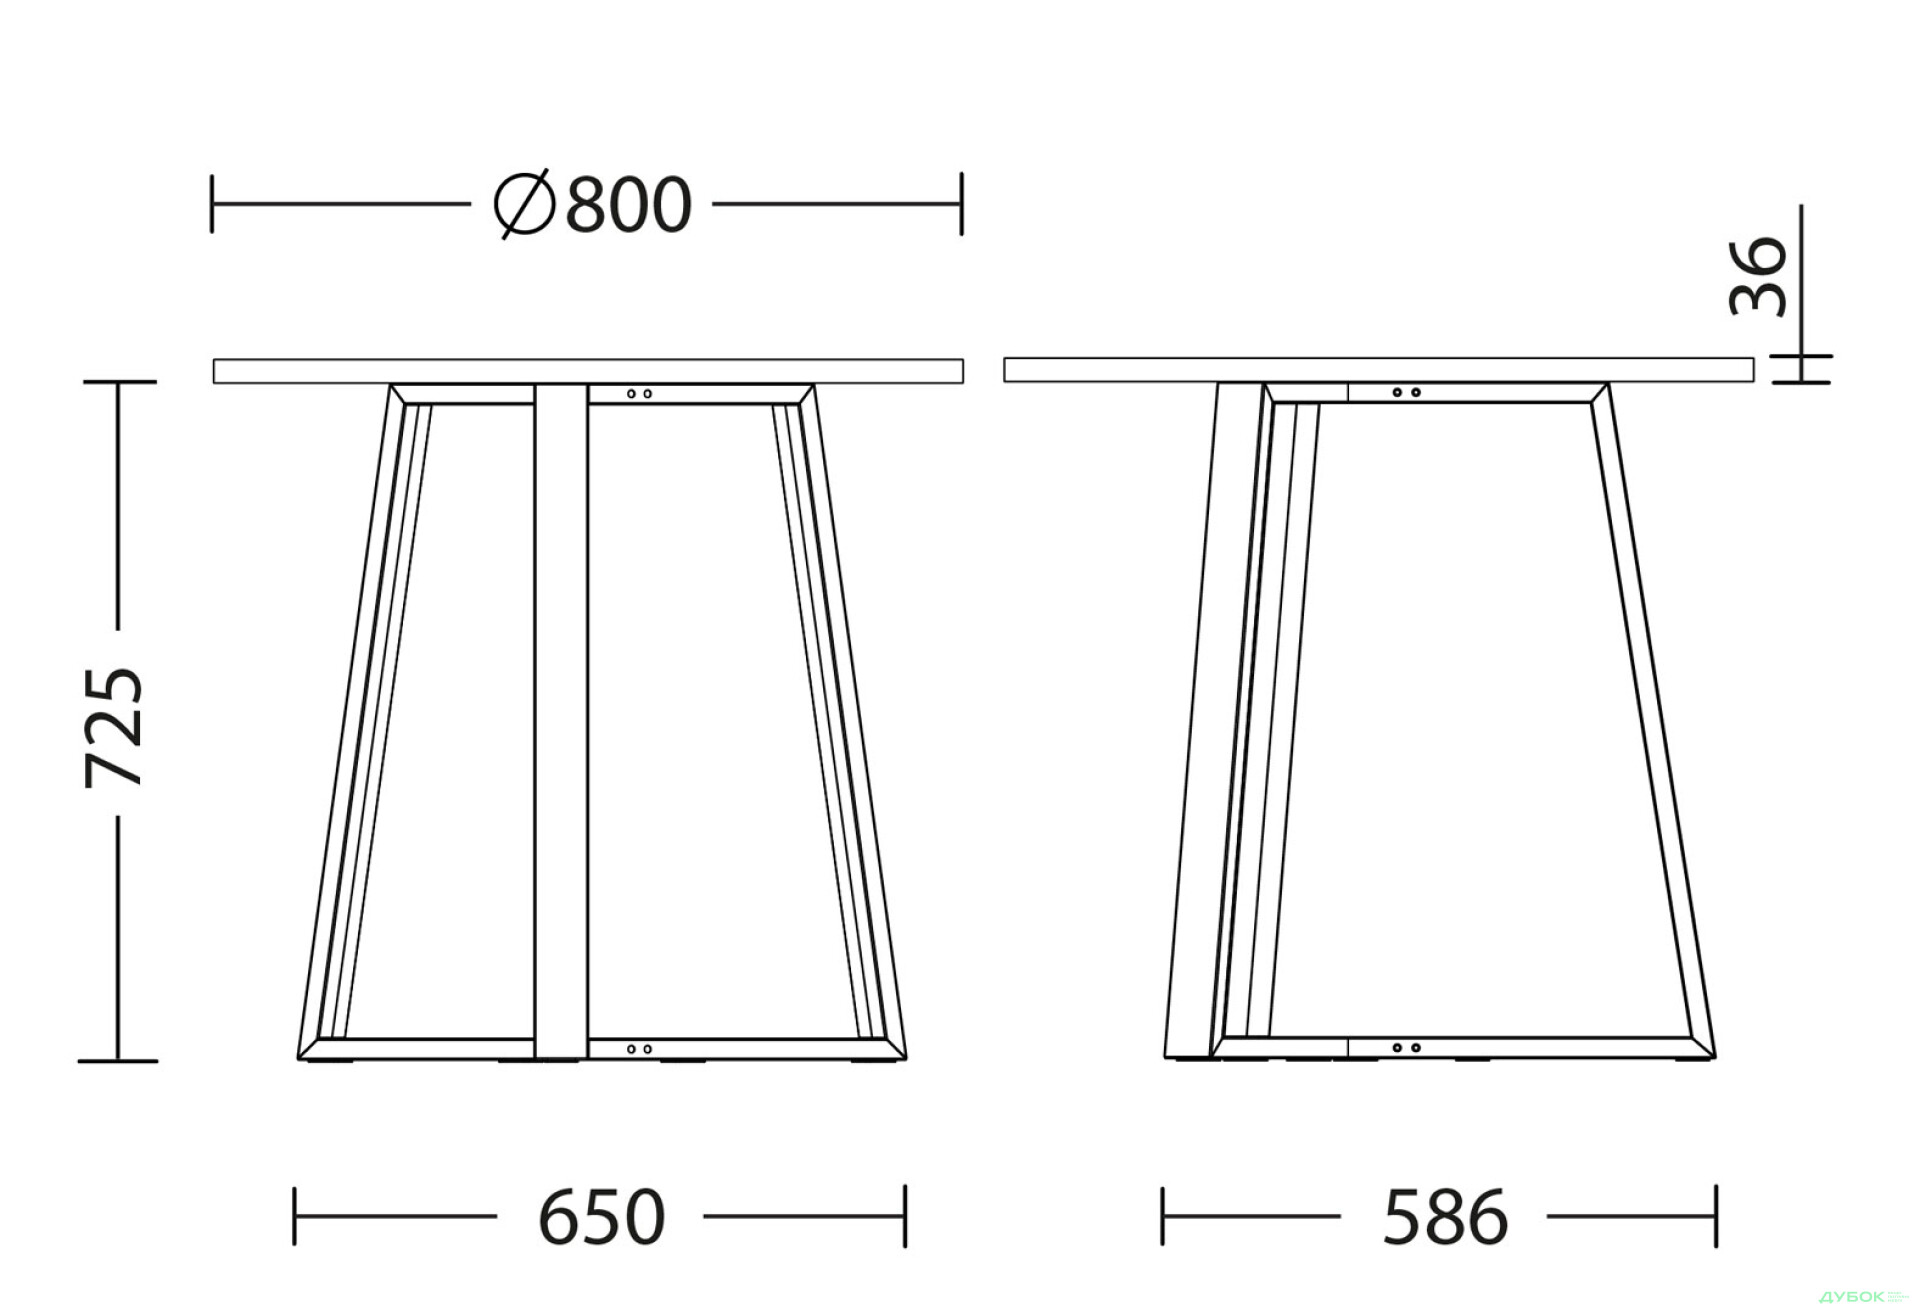 Фото 3 - Стол обеденный Новый Стиль Calipso white (36) D800 80x80 см, орех тиеполо